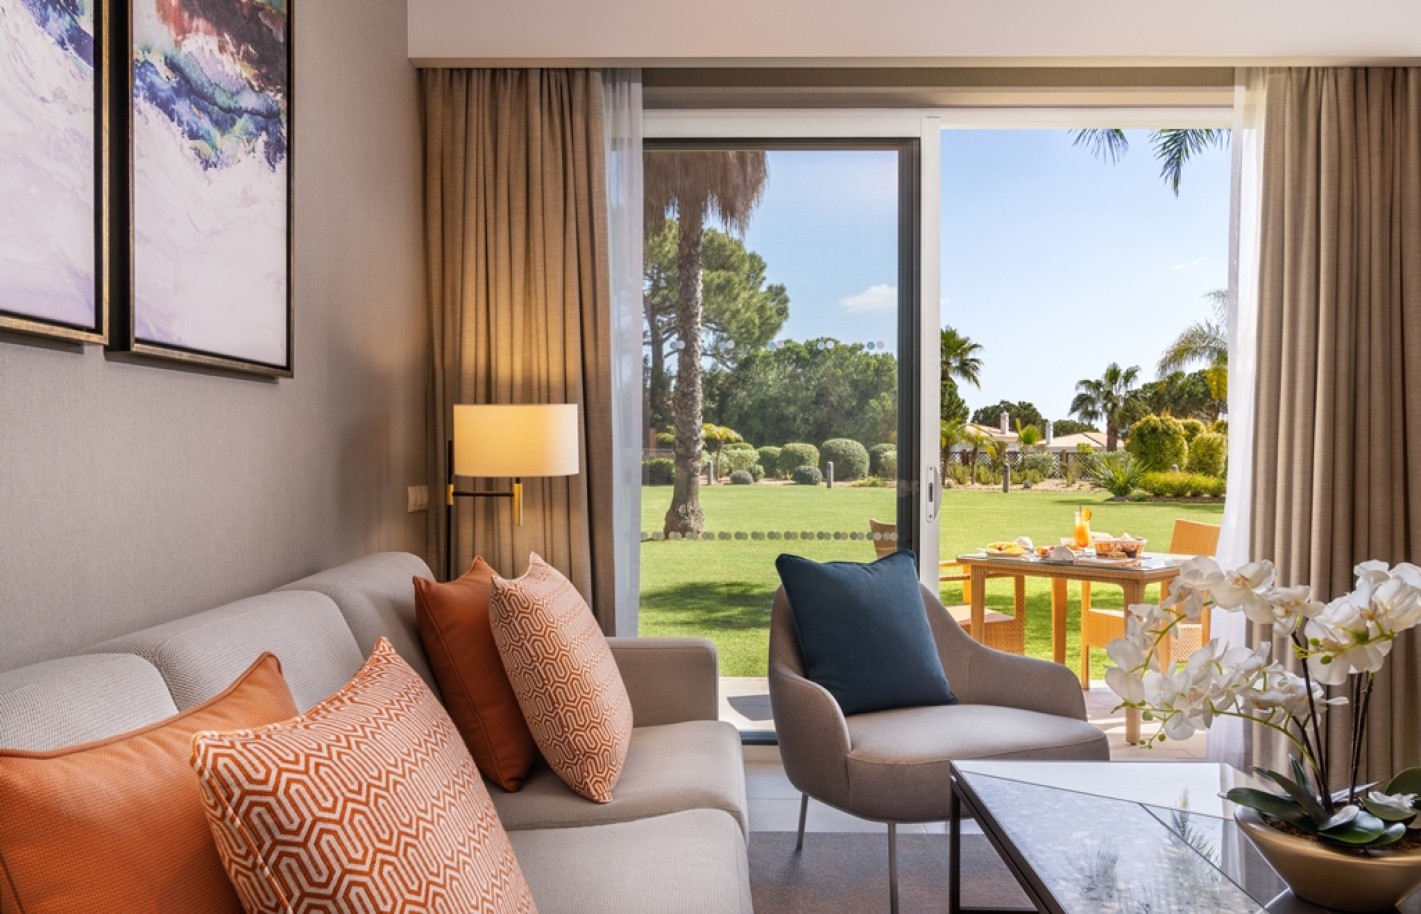 Apartamento, 2 quartos, piscina, para venda na Quinta do Lago, Algarve_263469